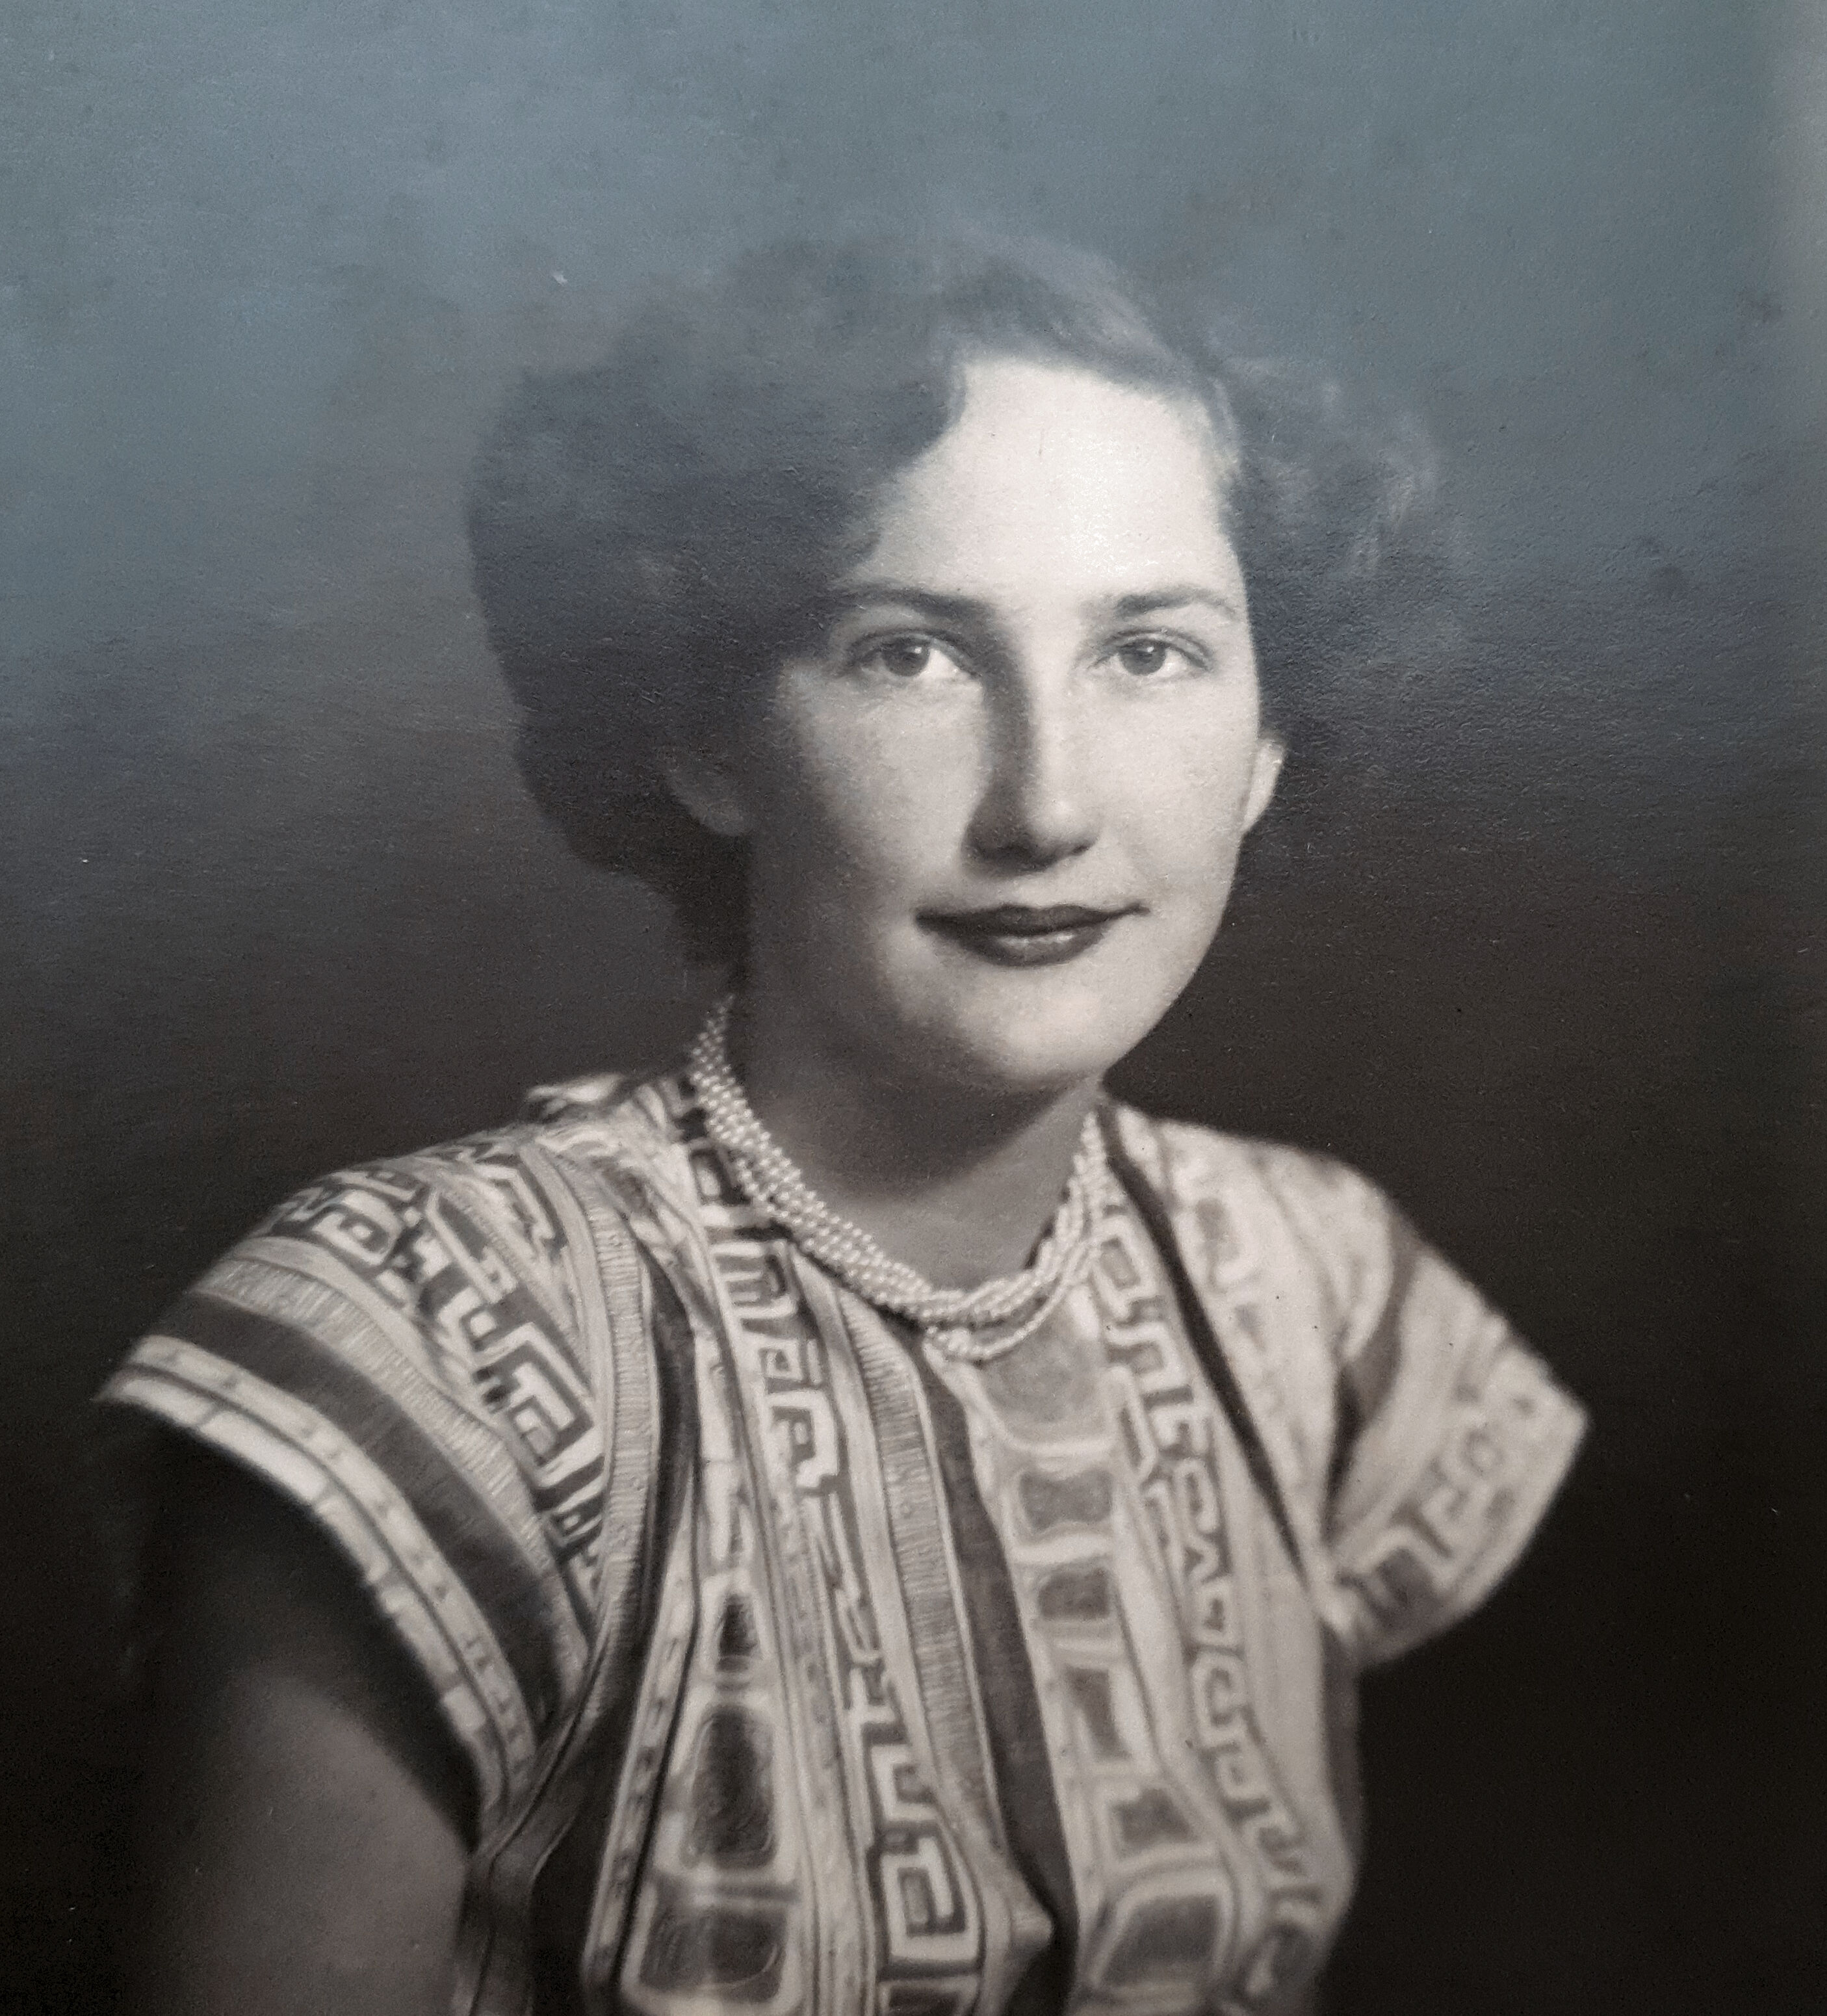 Muriel Thomas 1939 at age 18